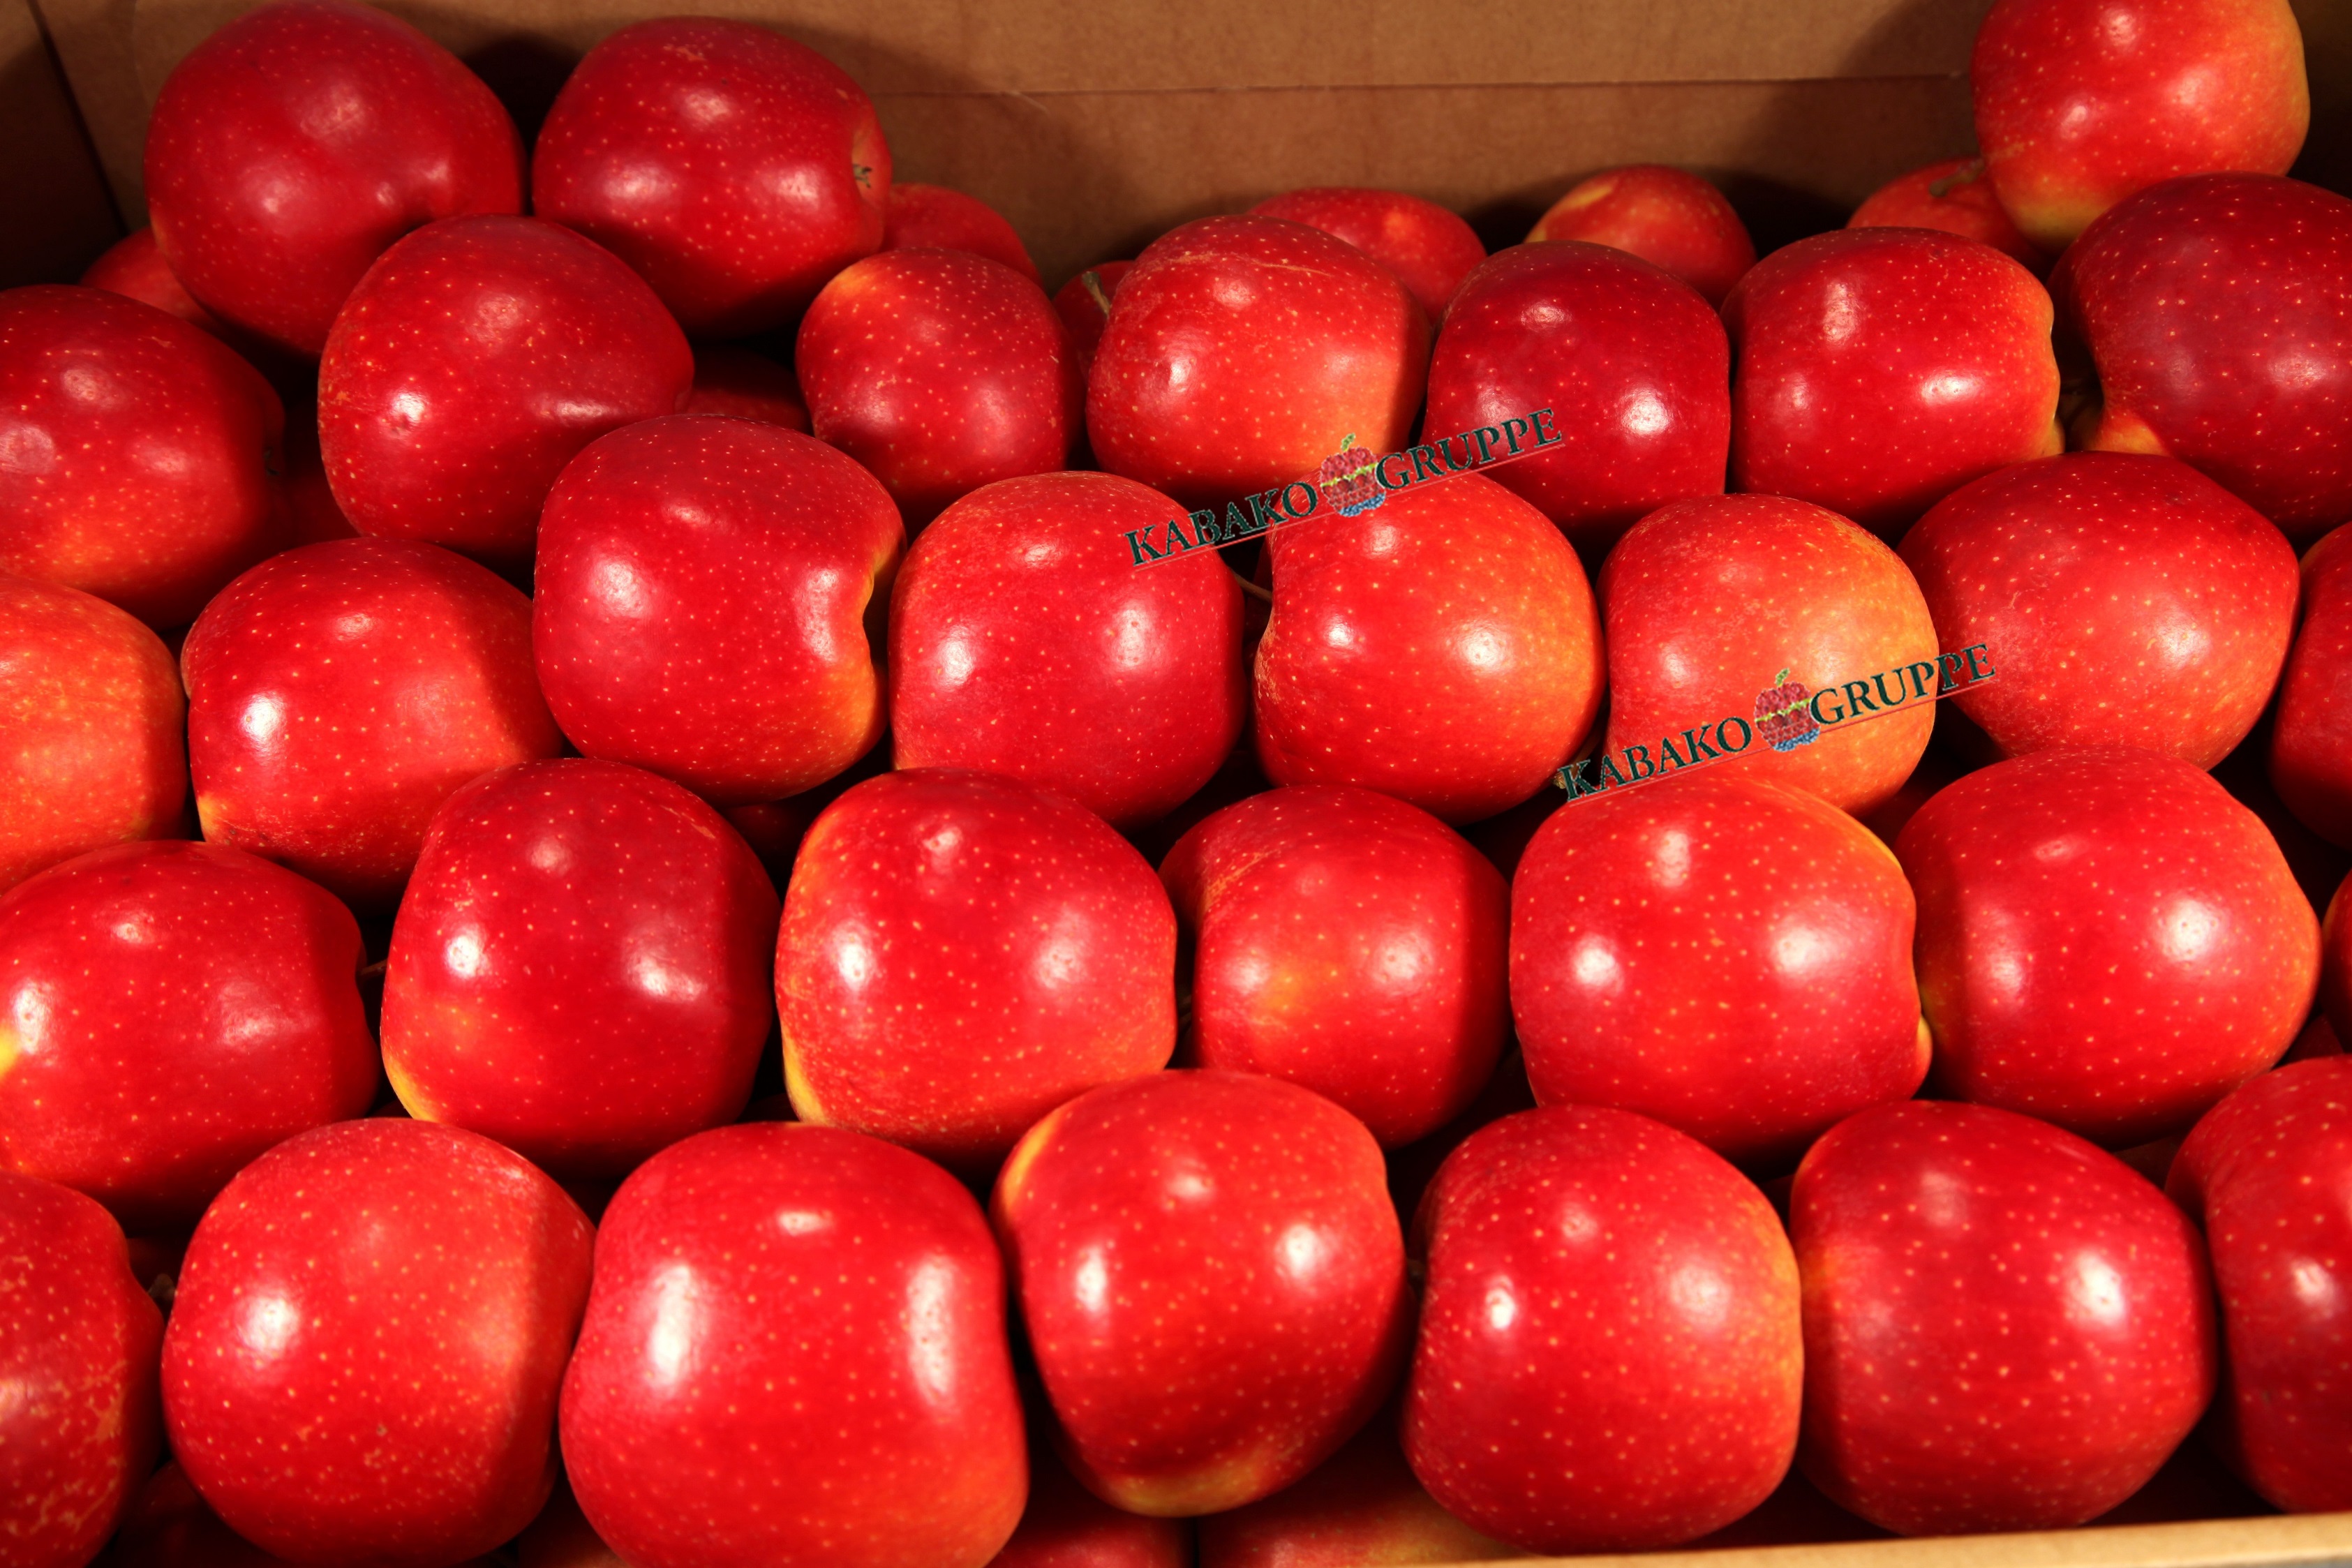 Frozen (IQF) Apples 78